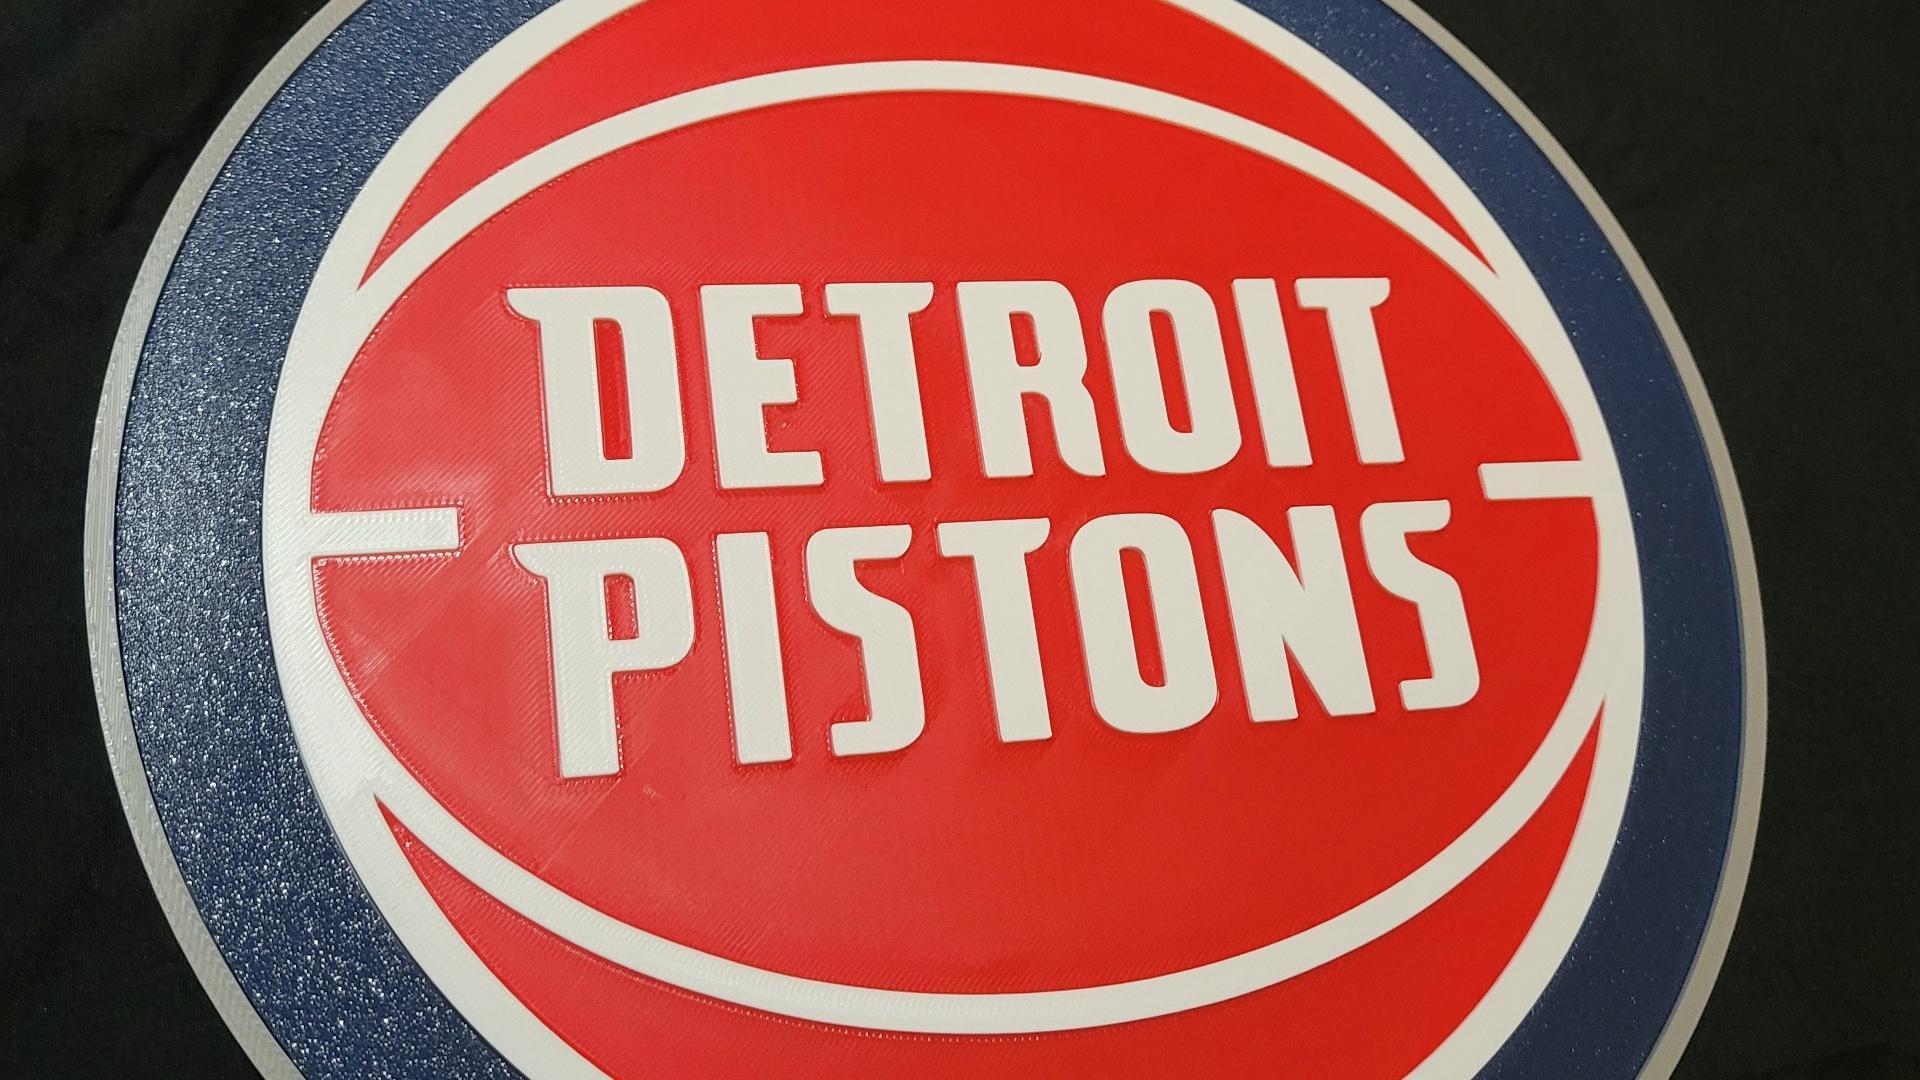 Detroit Pistons 3d model